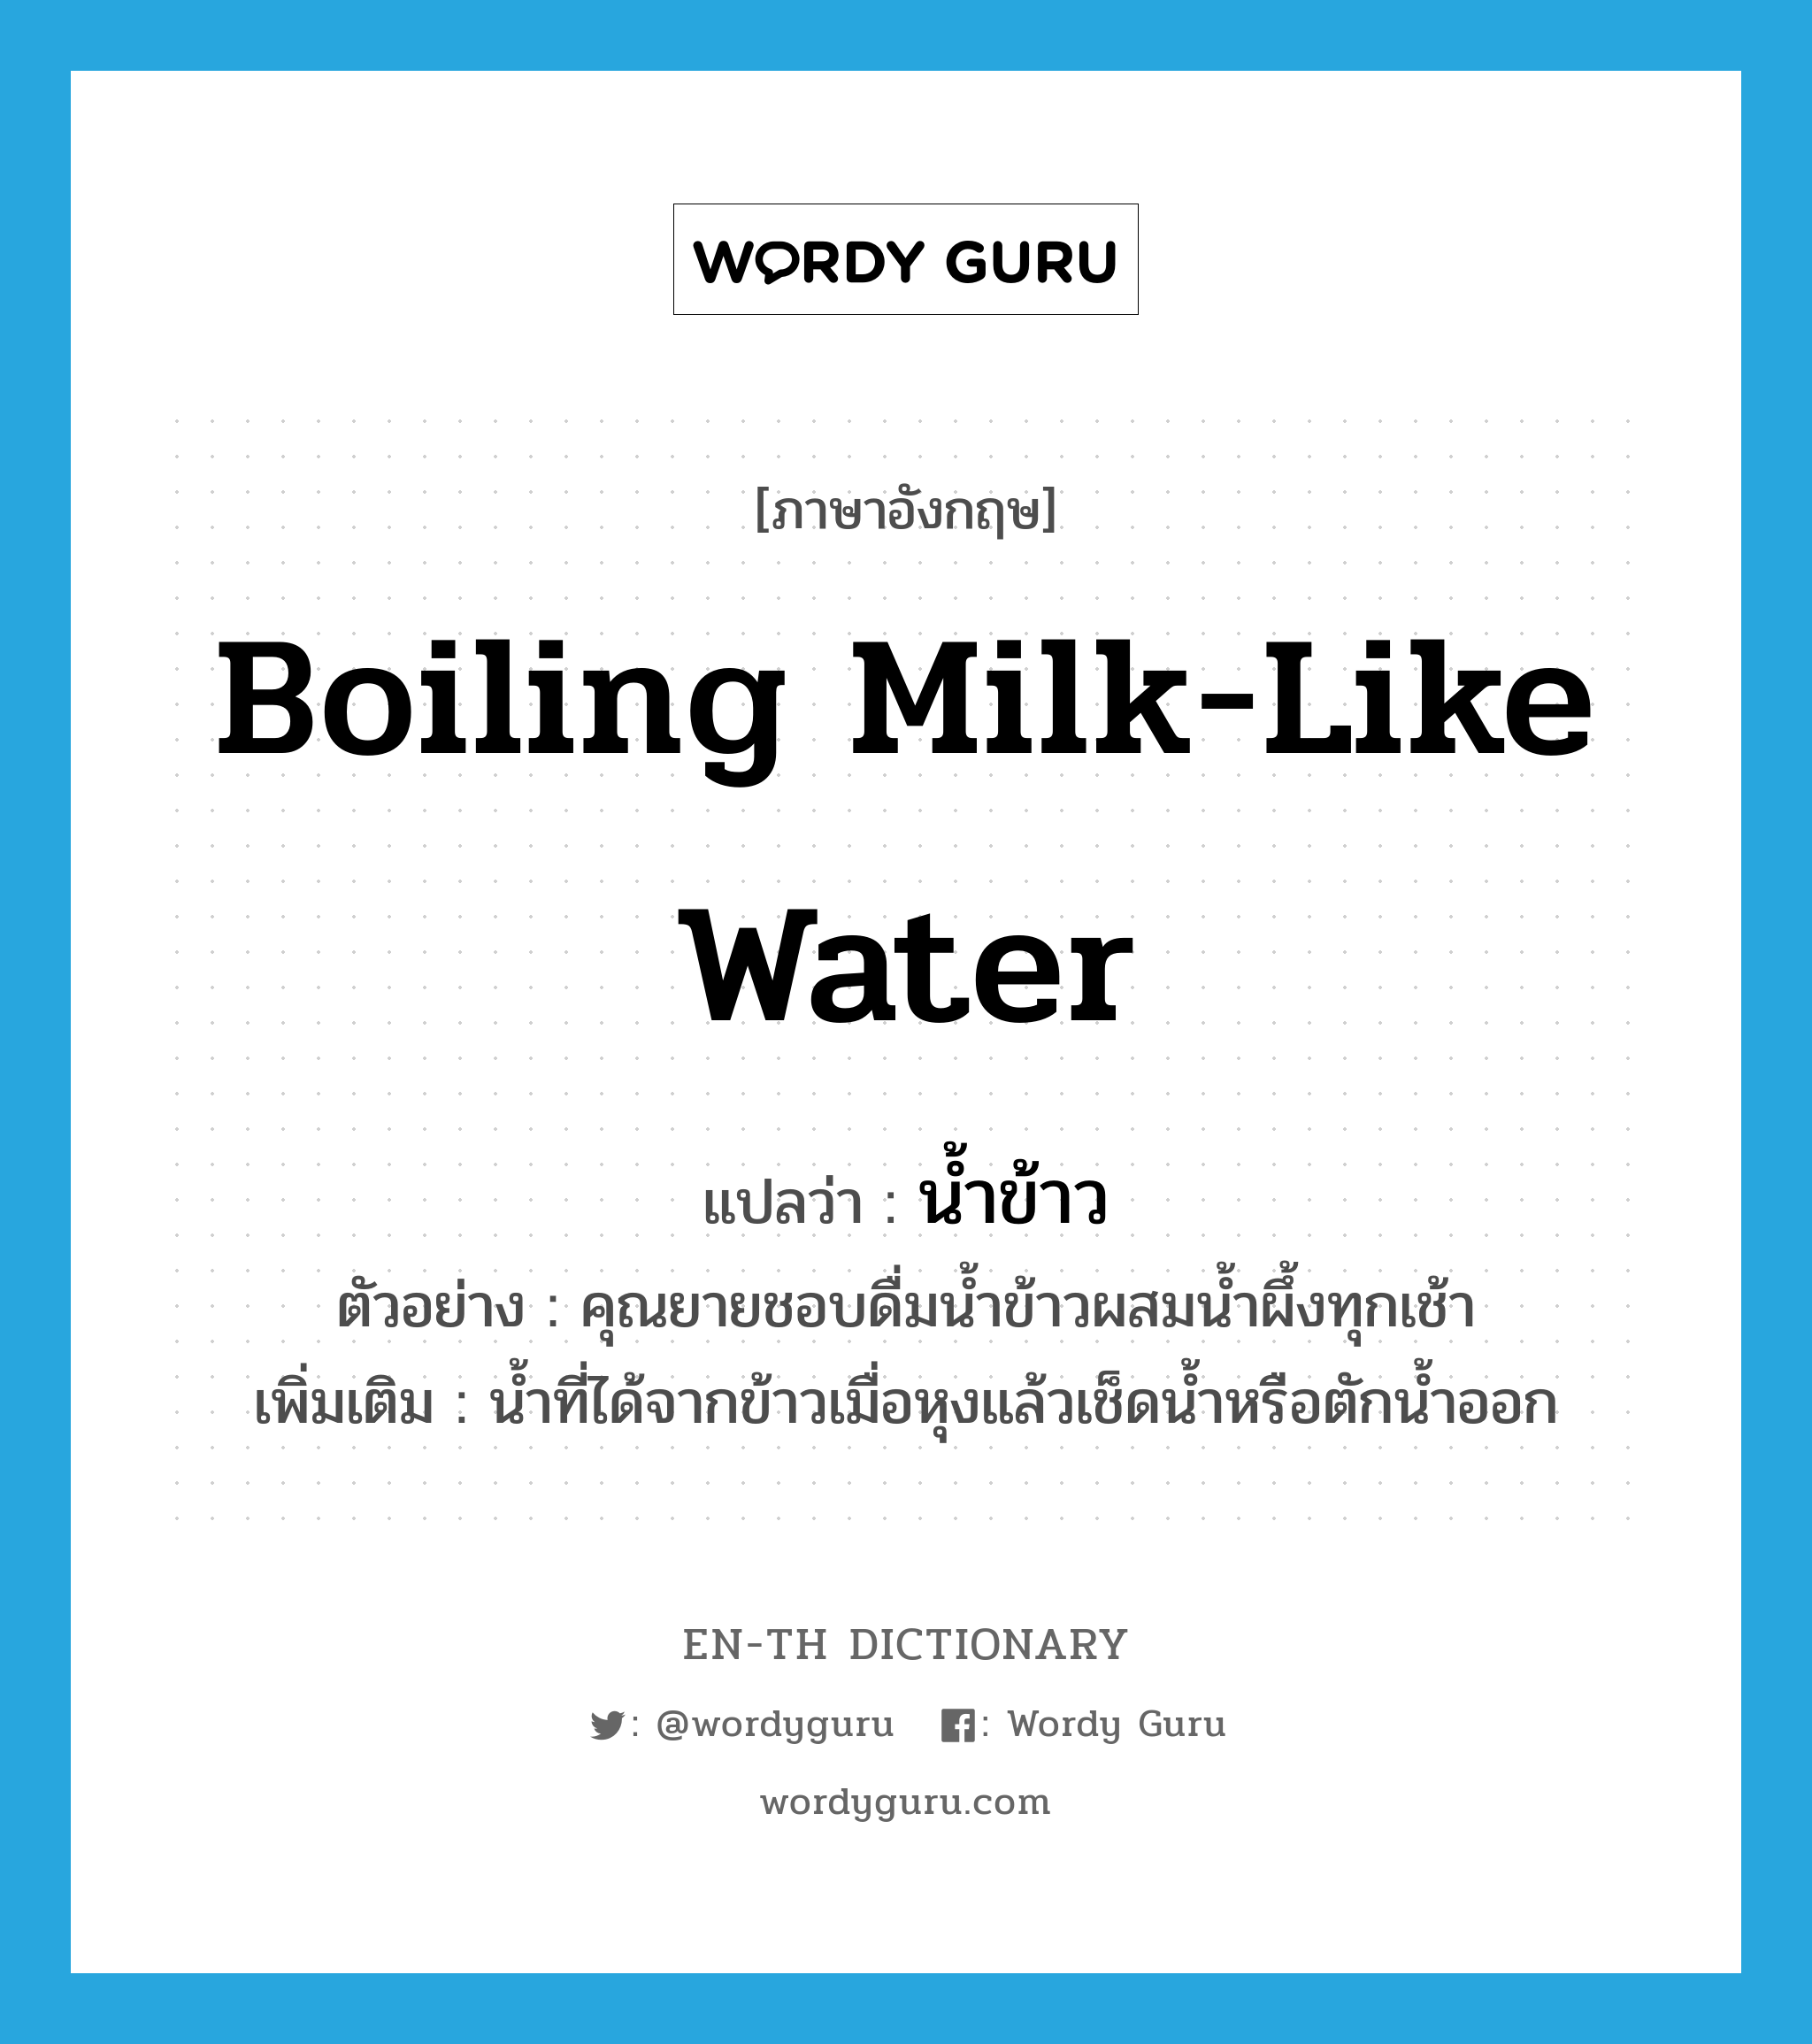 น้ำข้าว ภาษาอังกฤษ?, คำศัพท์ภาษาอังกฤษ น้ำข้าว แปลว่า boiling milk-like water ประเภท N ตัวอย่าง คุณยายชอบดื่มน้ำข้าวผสมน้ำผึ้งทุกเช้า เพิ่มเติม น้ำที่ได้จากข้าวเมื่อหุงแล้วเช็ดน้ำหรือตักน้ำออก หมวด N